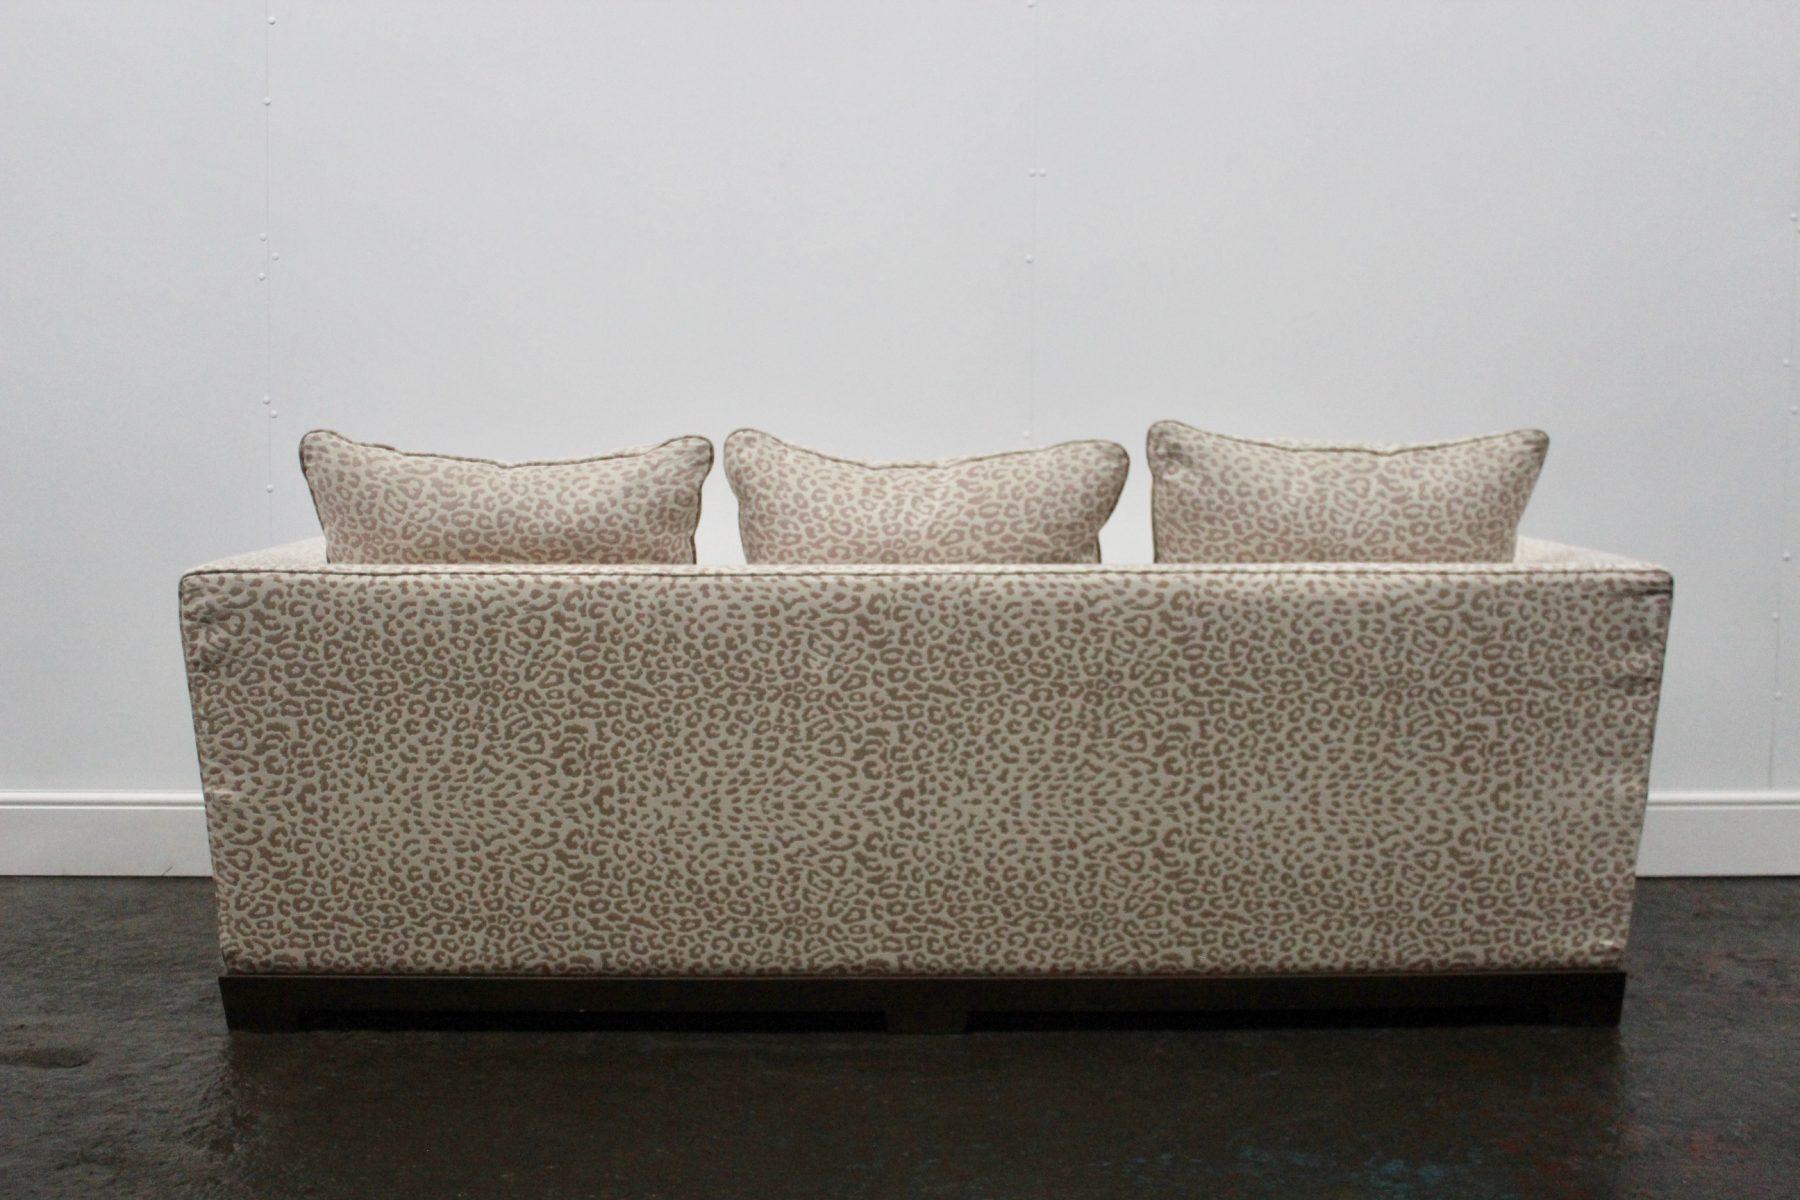 Contemporary Promemoria “Wanda” 2.5-Seat Sofa in Leopard-Print Fabric For Sale